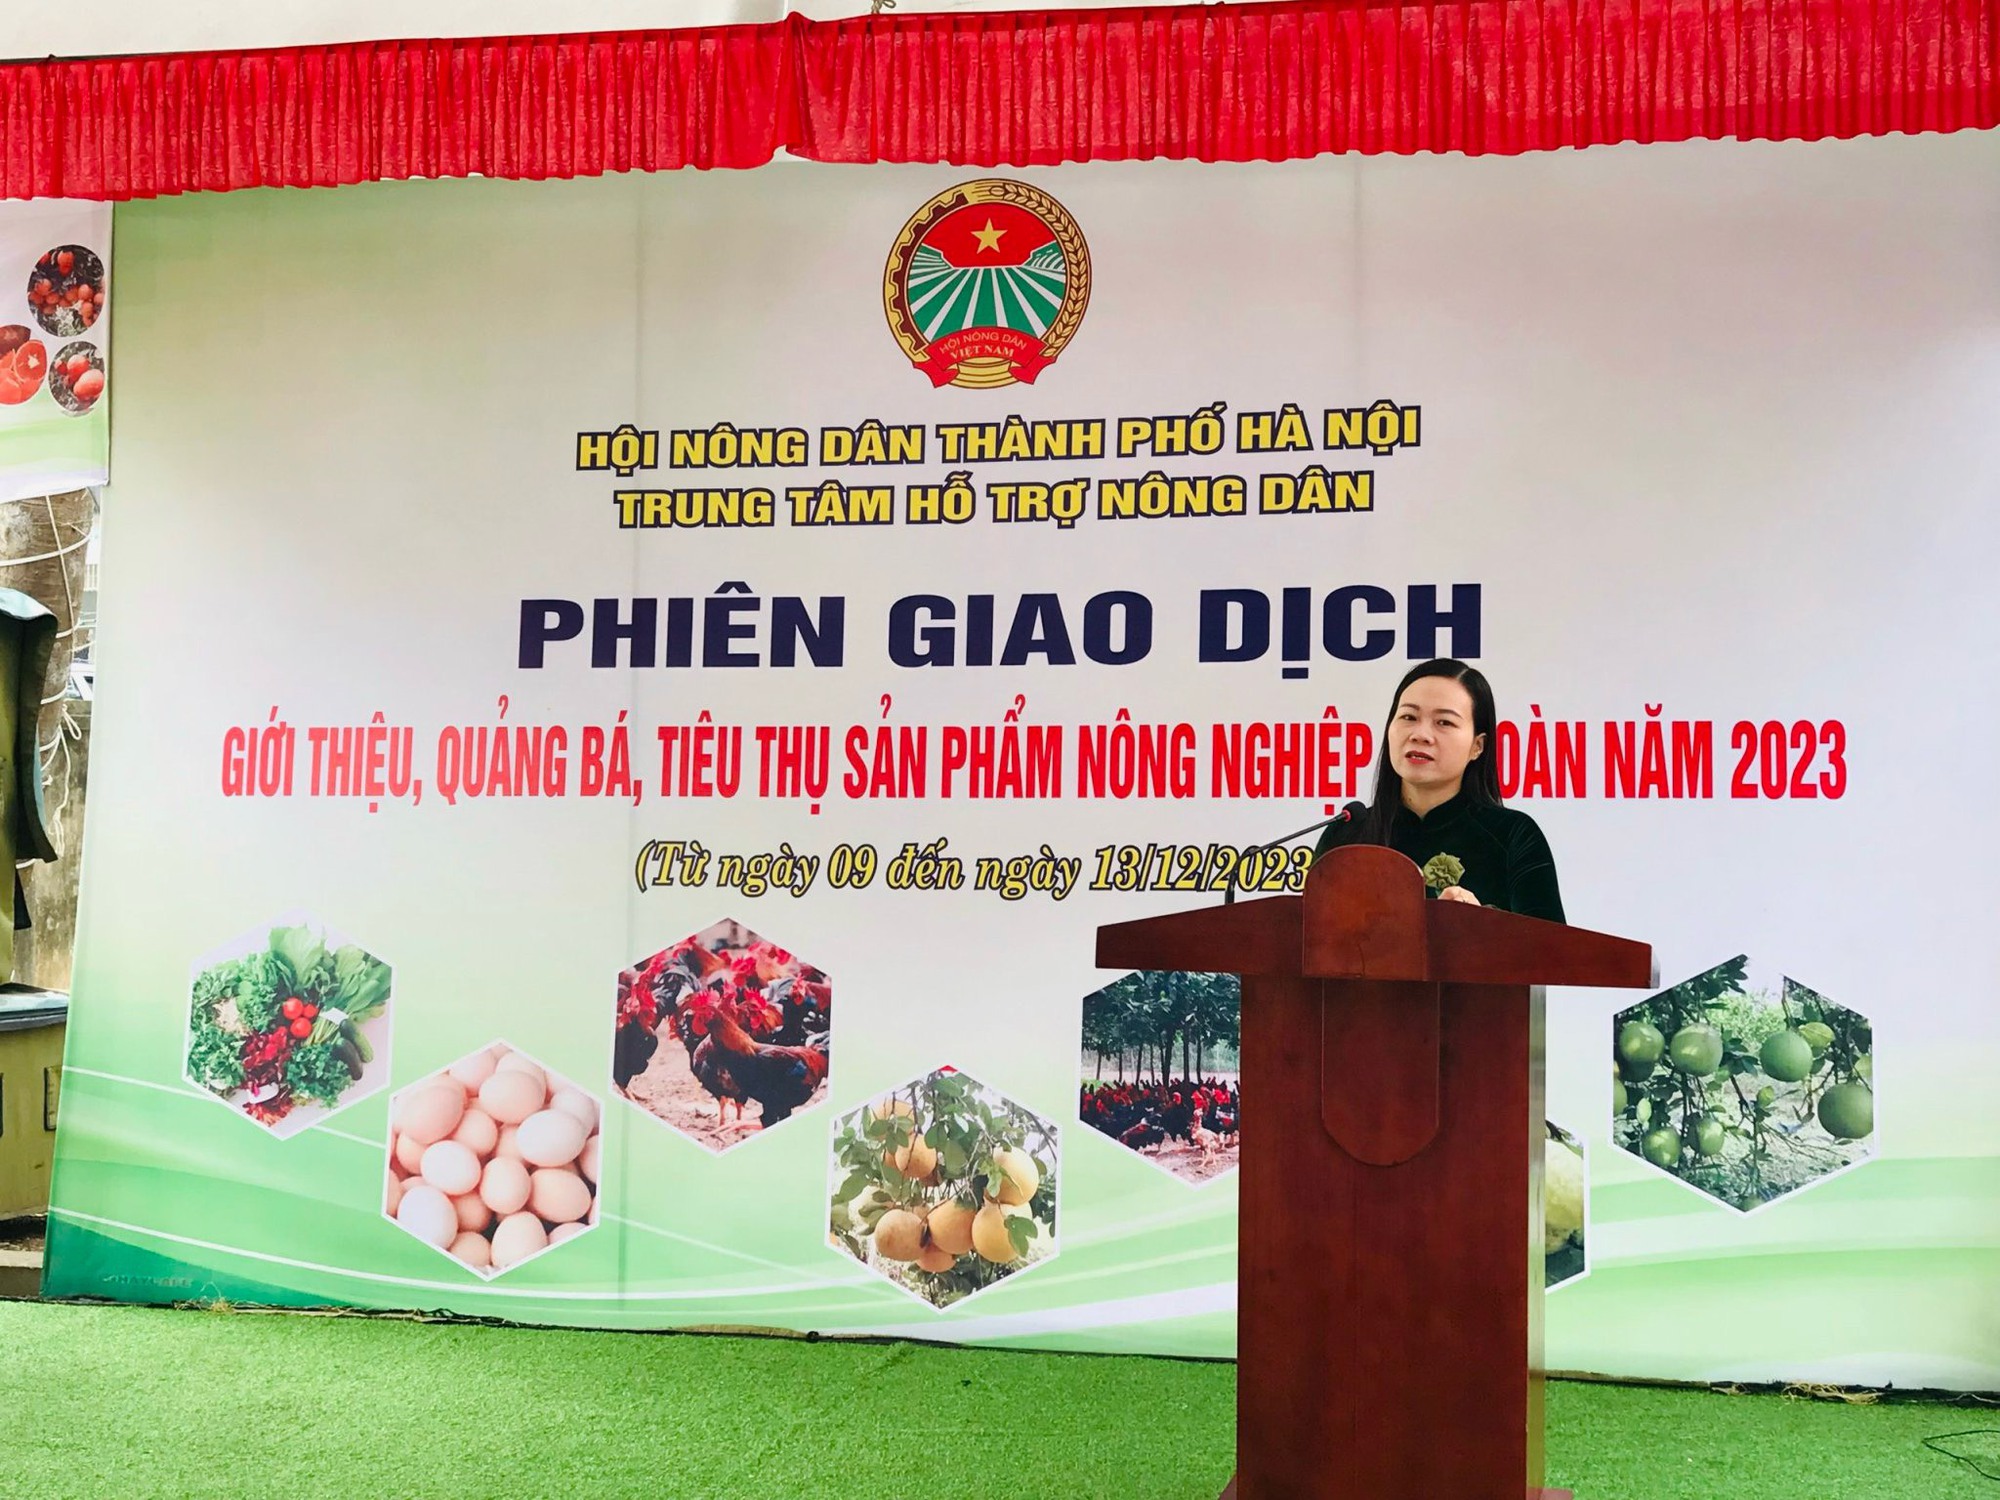 Hội Nông dân Hà Nội tổ chức phiên giao dịch giới thiệu, quảng bá, tiêu thụ nông sản năm 2023 tại Ba Vì - Ảnh 2.